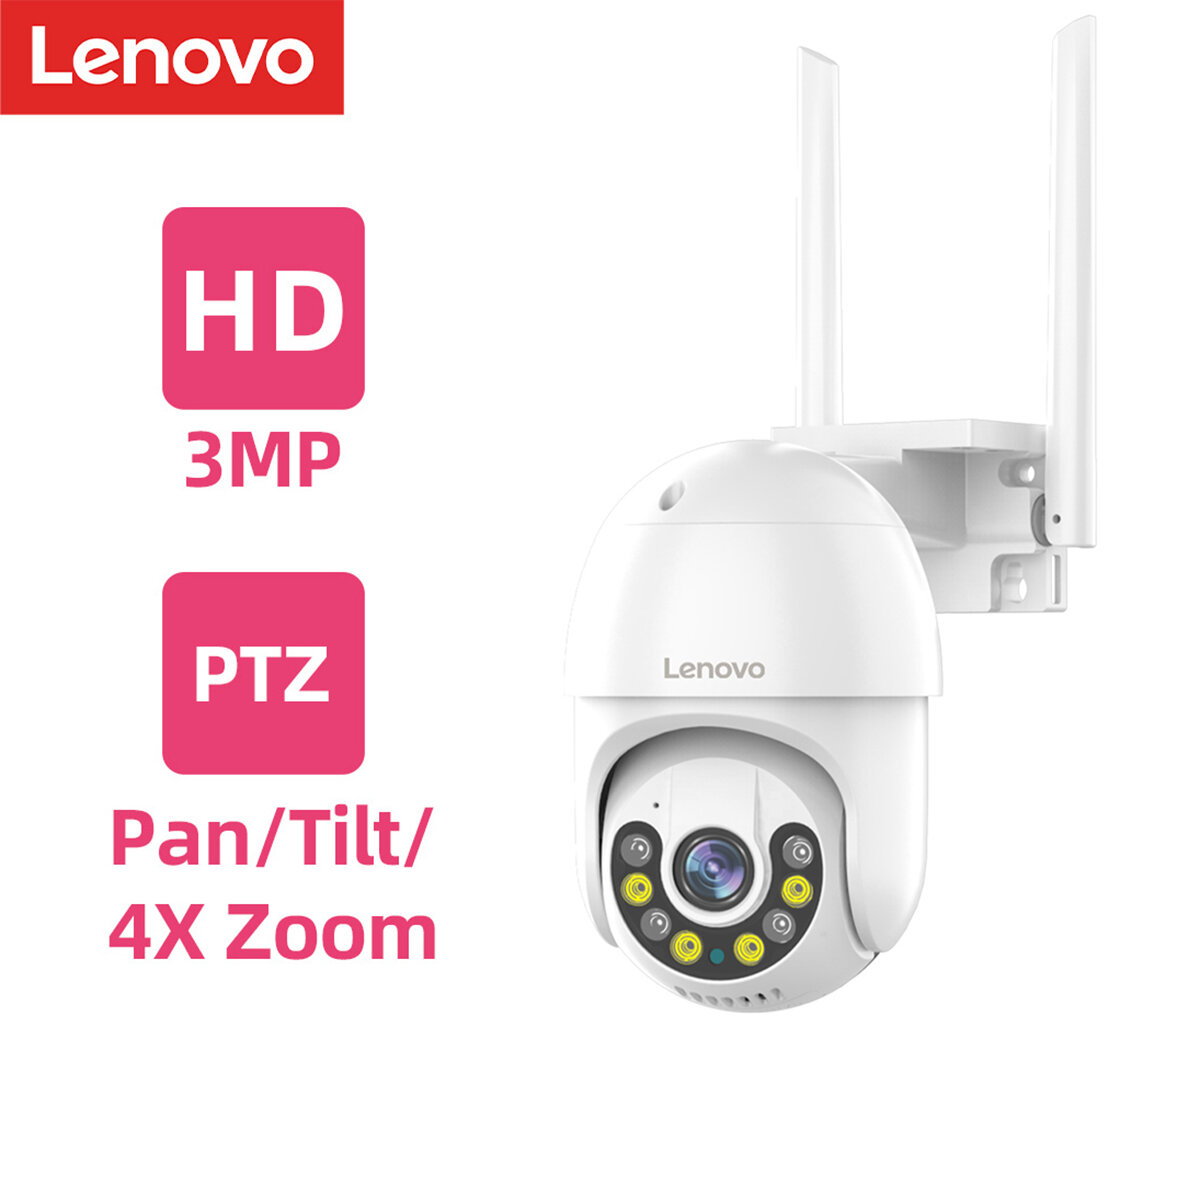 Kamera IP Lenovo 3MP za $53.62 / ~213zł